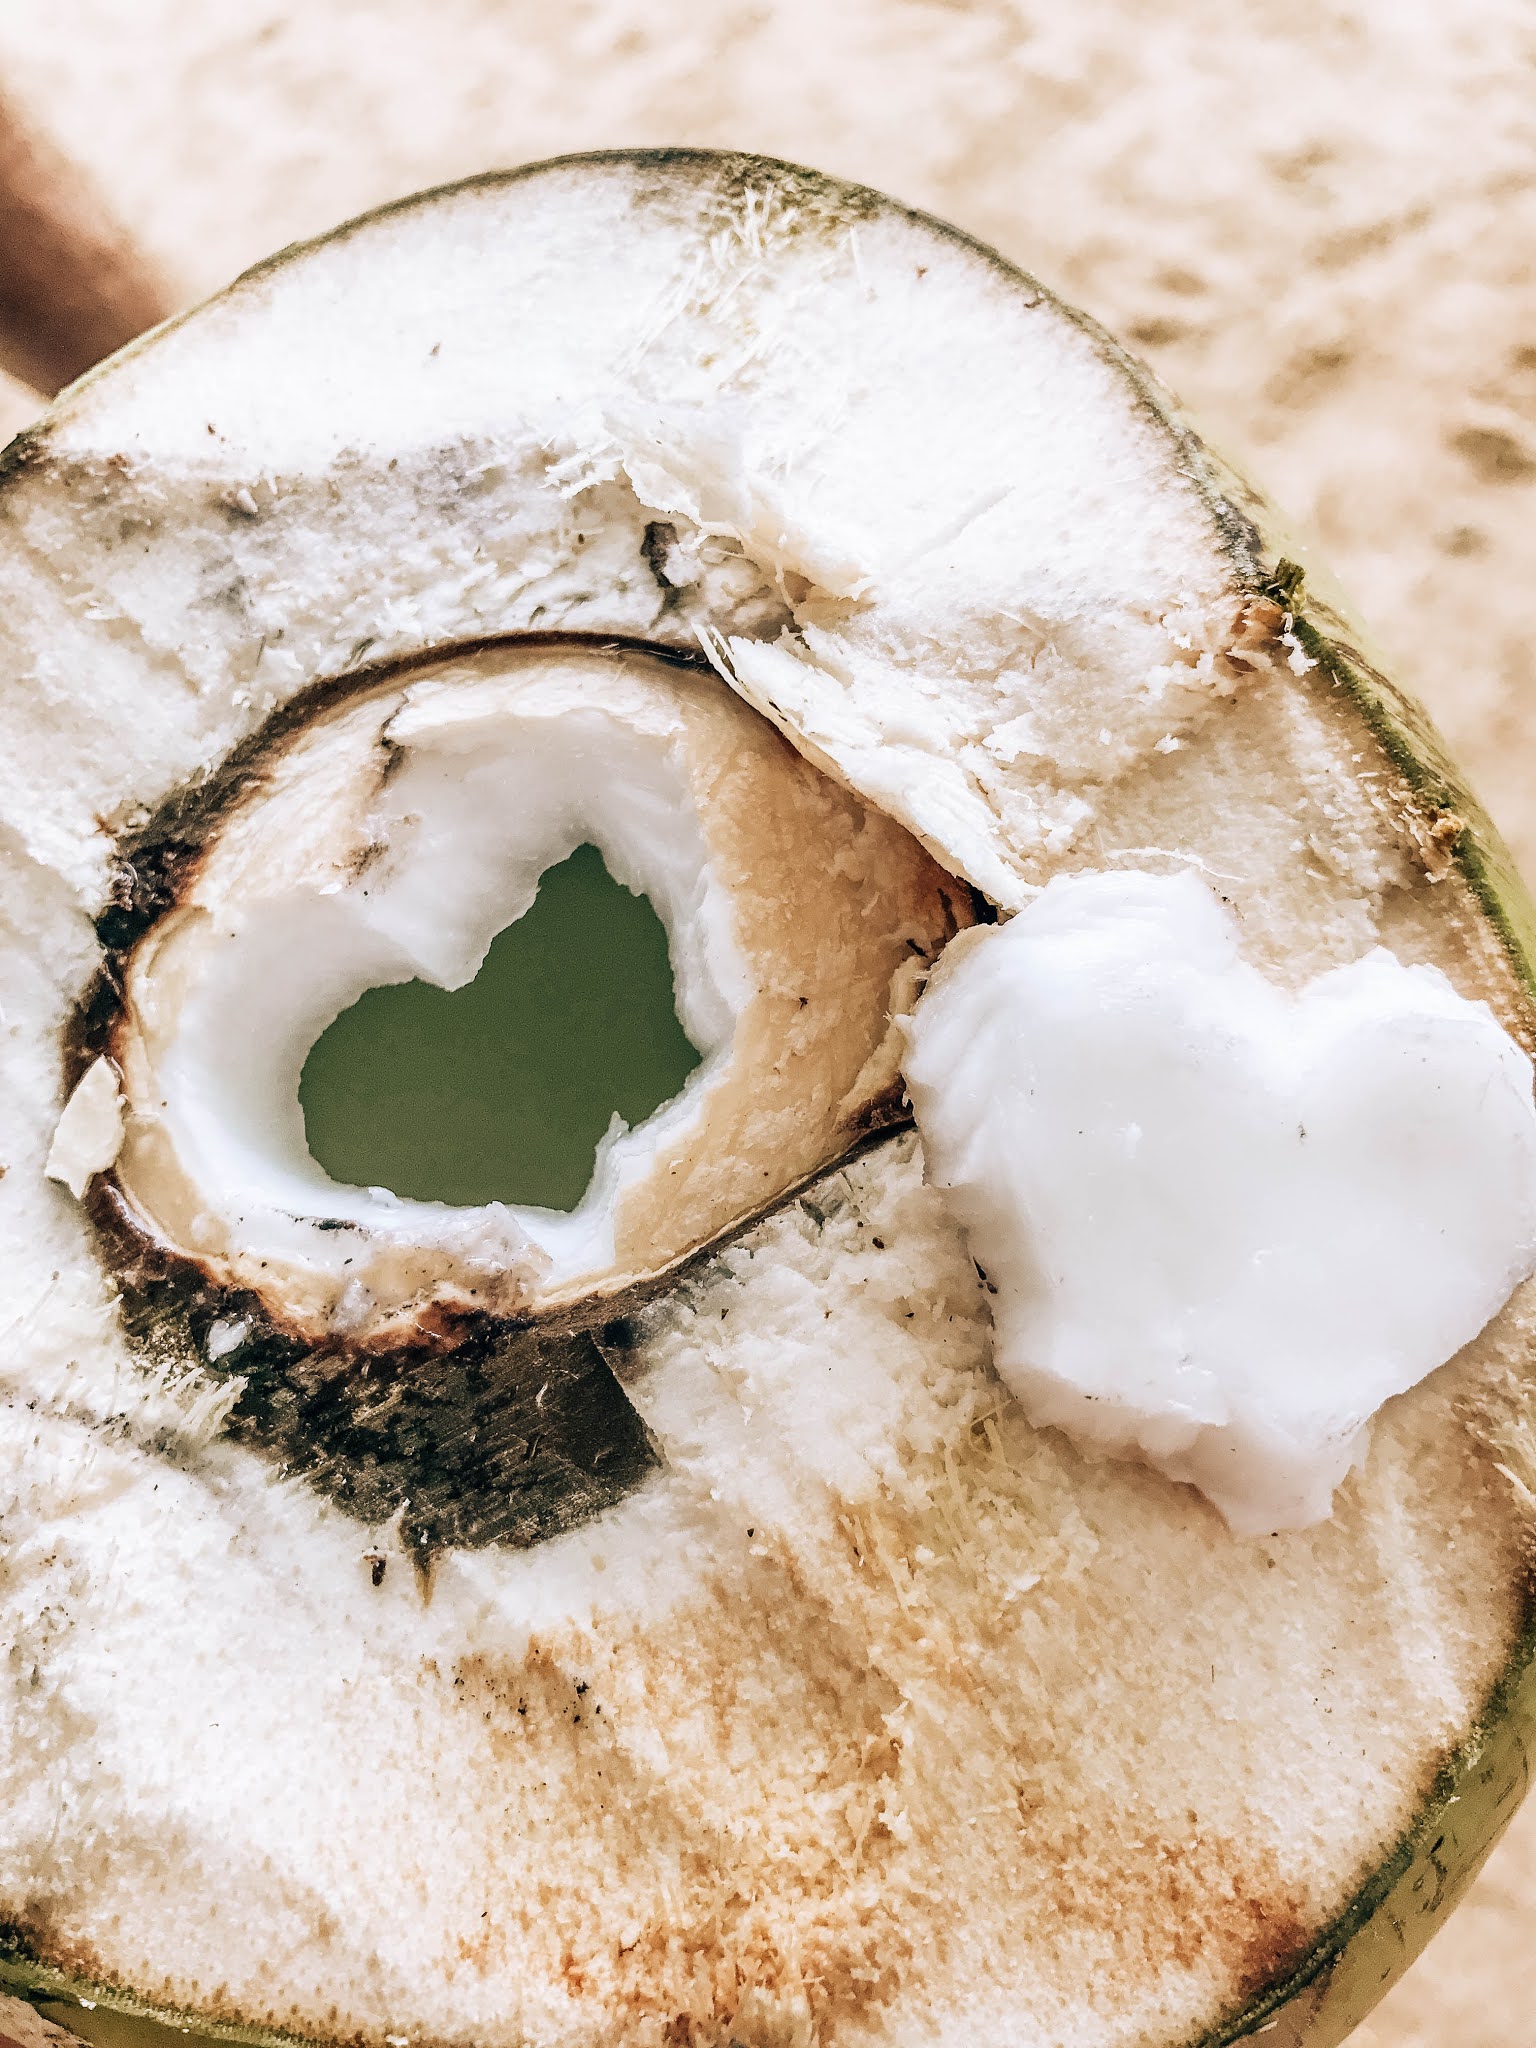 Malvina Dunder blog podróże, rozwój osobisty, relacje kokos planeta skarby ziemi